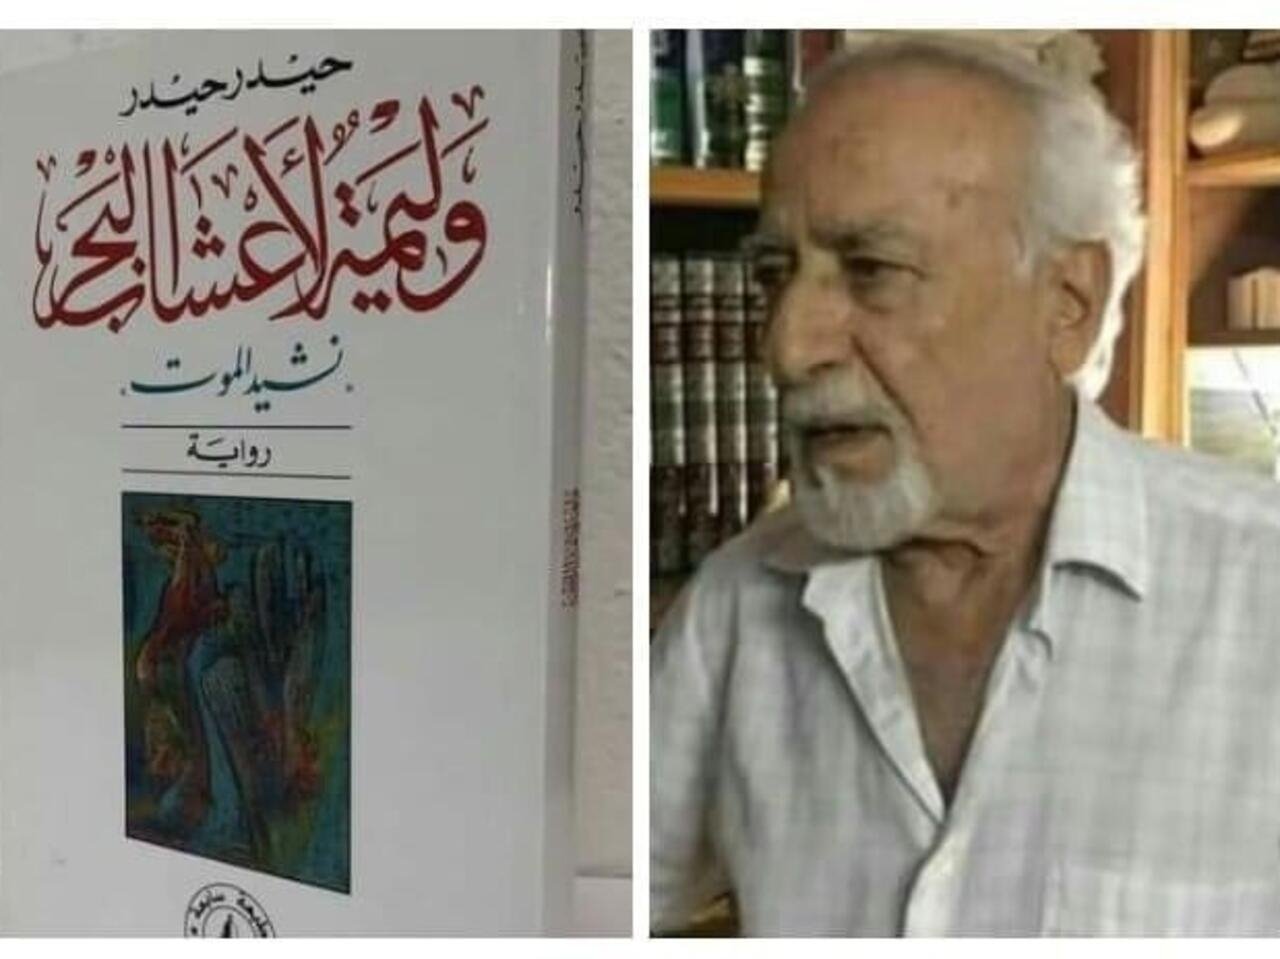 الكاتب السوري حيدر حيدر